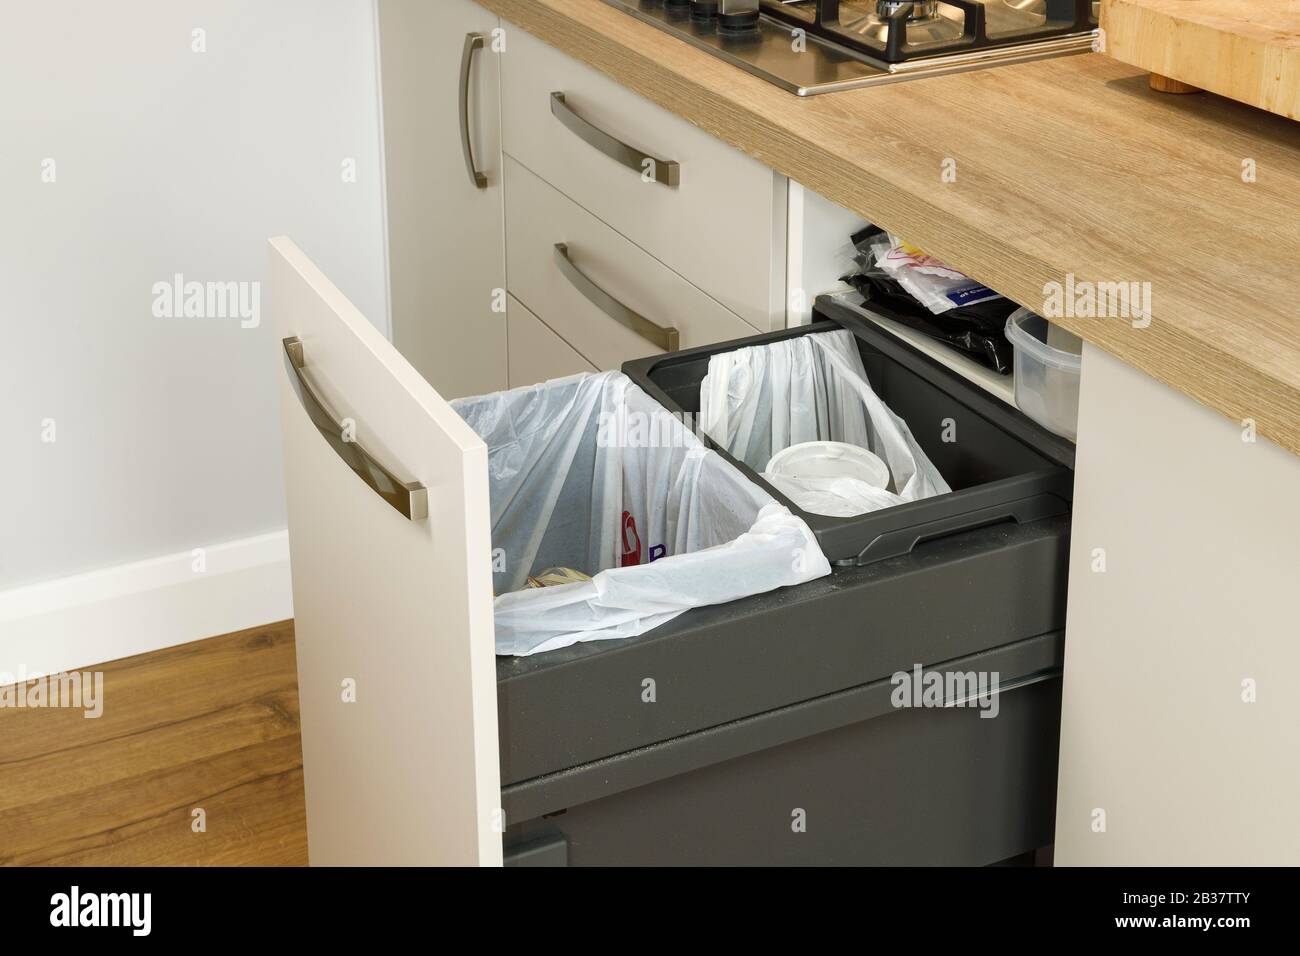 Estrarre i contenitori di riciclaggio in una cucina moderna Foto Stock